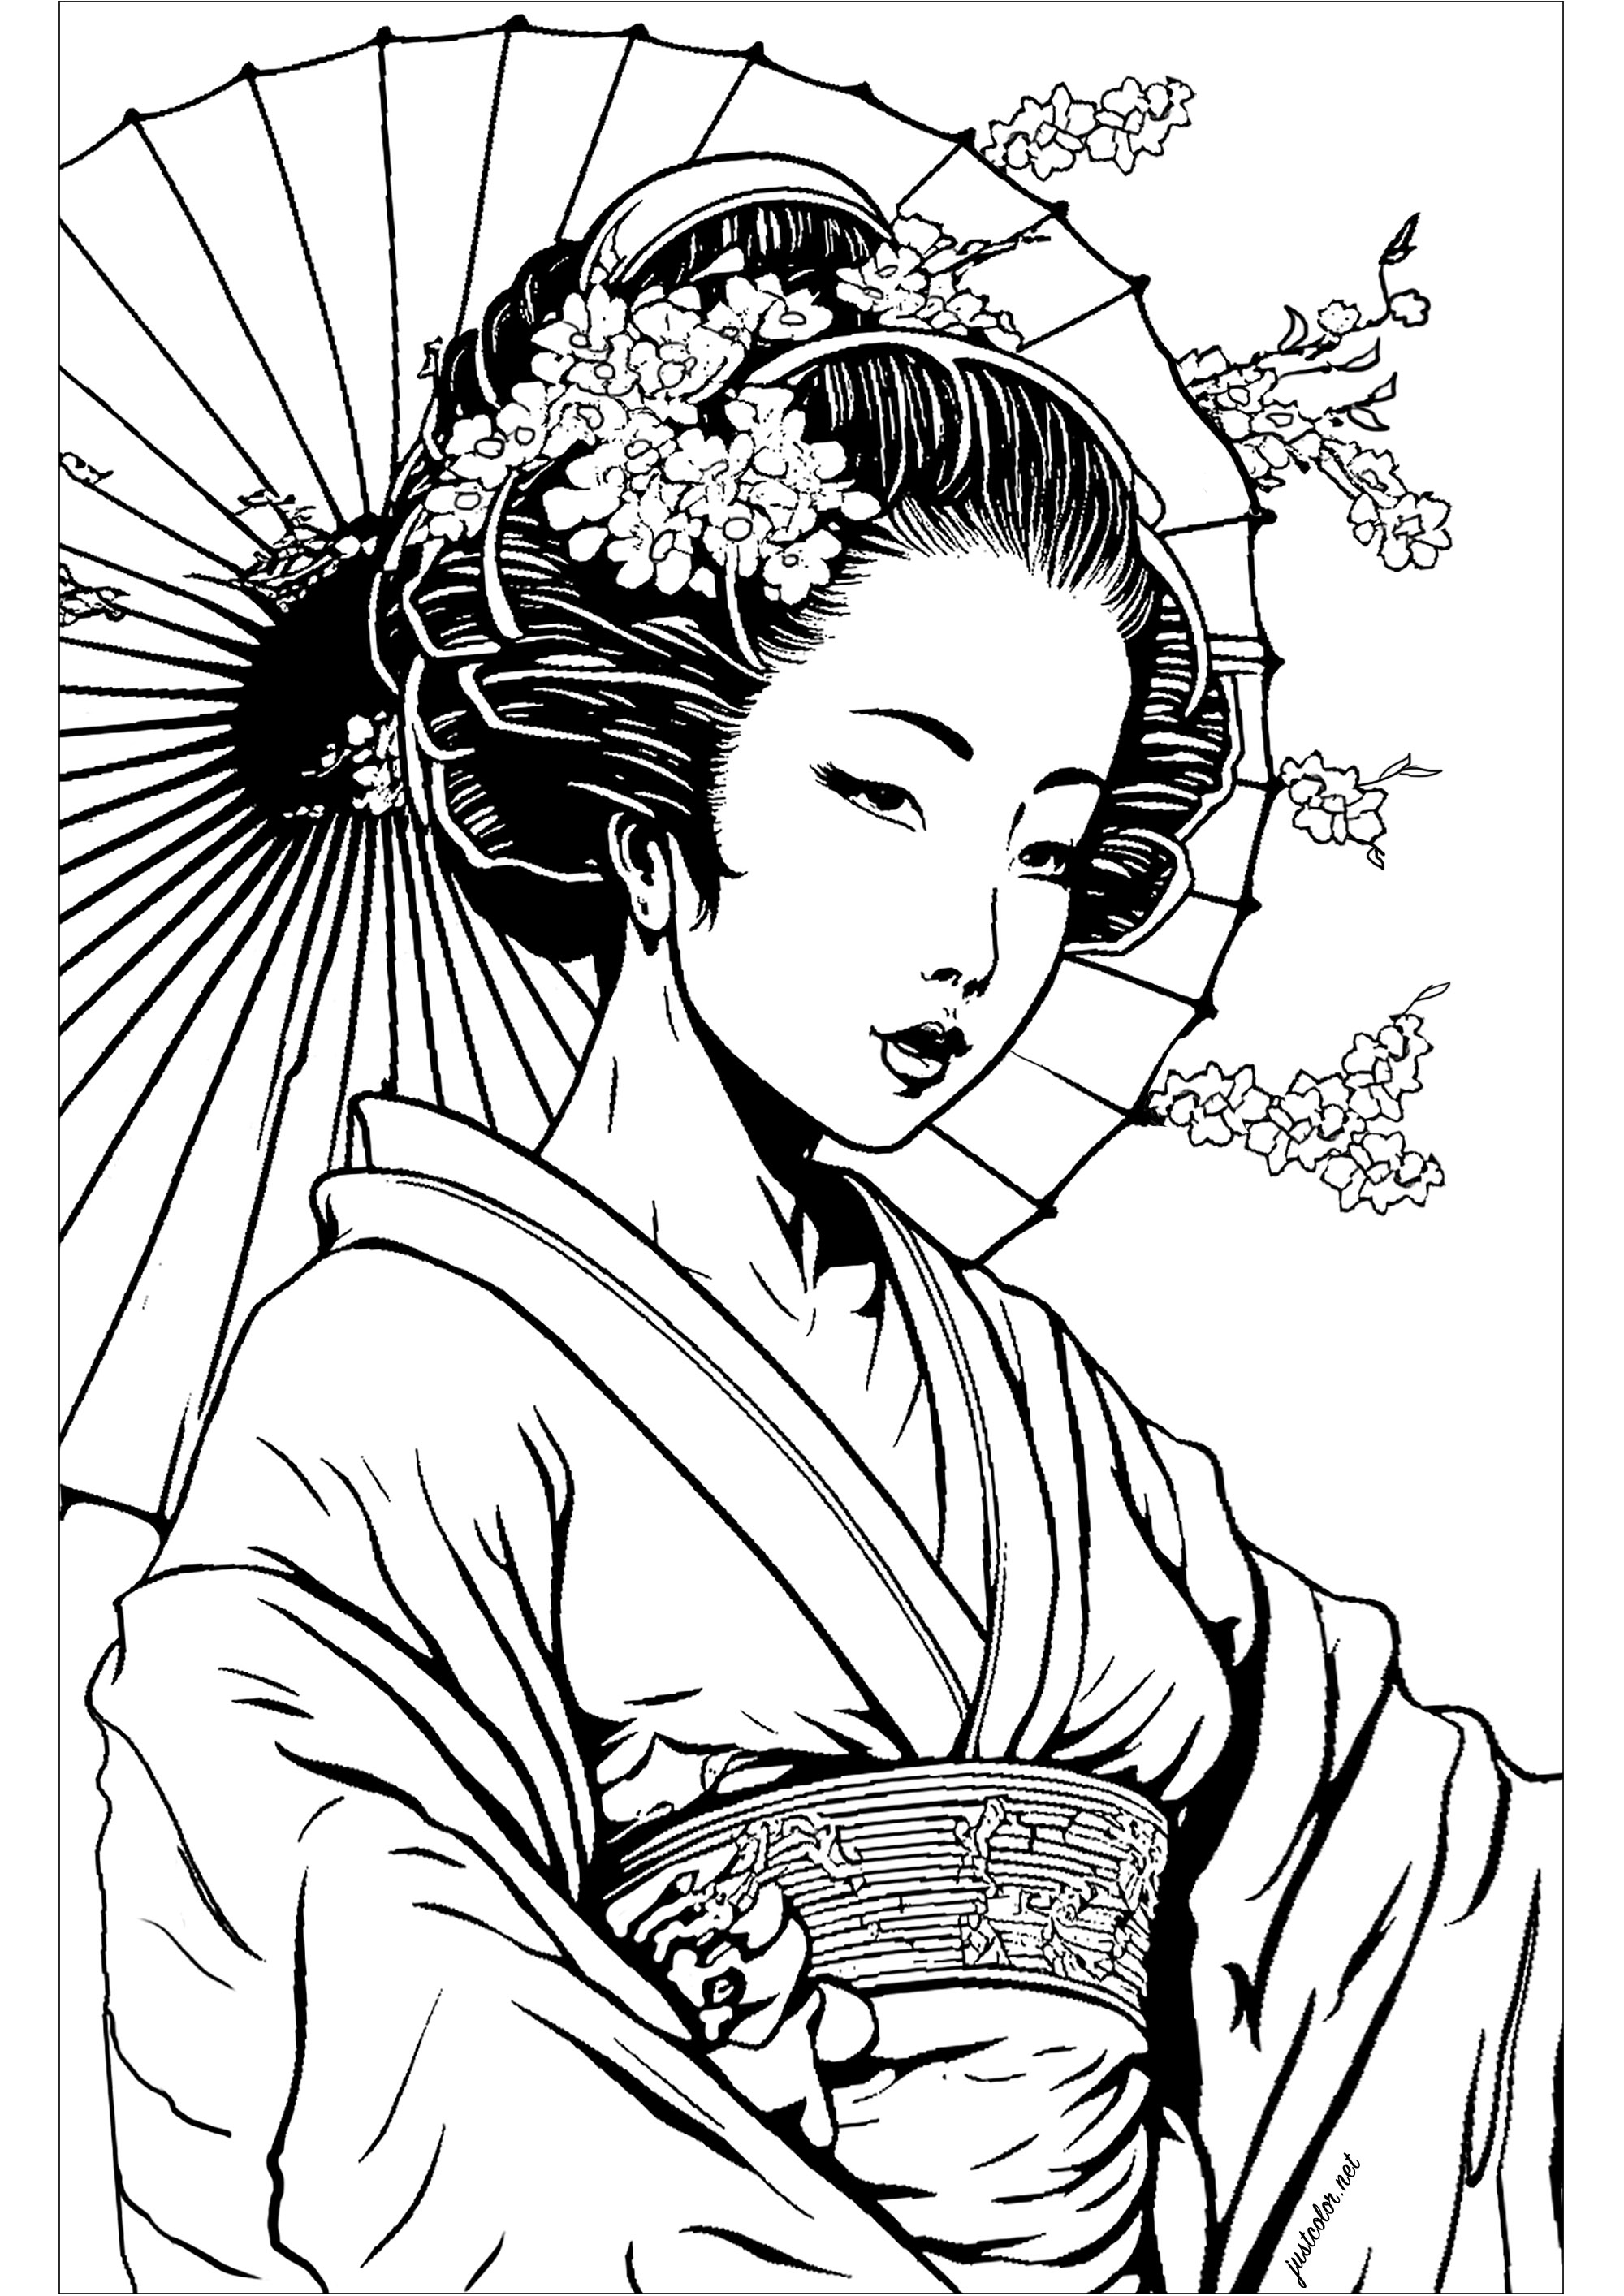 Belle Geisha à colorier. La Geisha est représentée dans une pose classique, avec une expression sereine et bienveillante. La composition est très simple, mais elle est très expressive et vous procurera un sentiment d'apaisement et de relaxation.